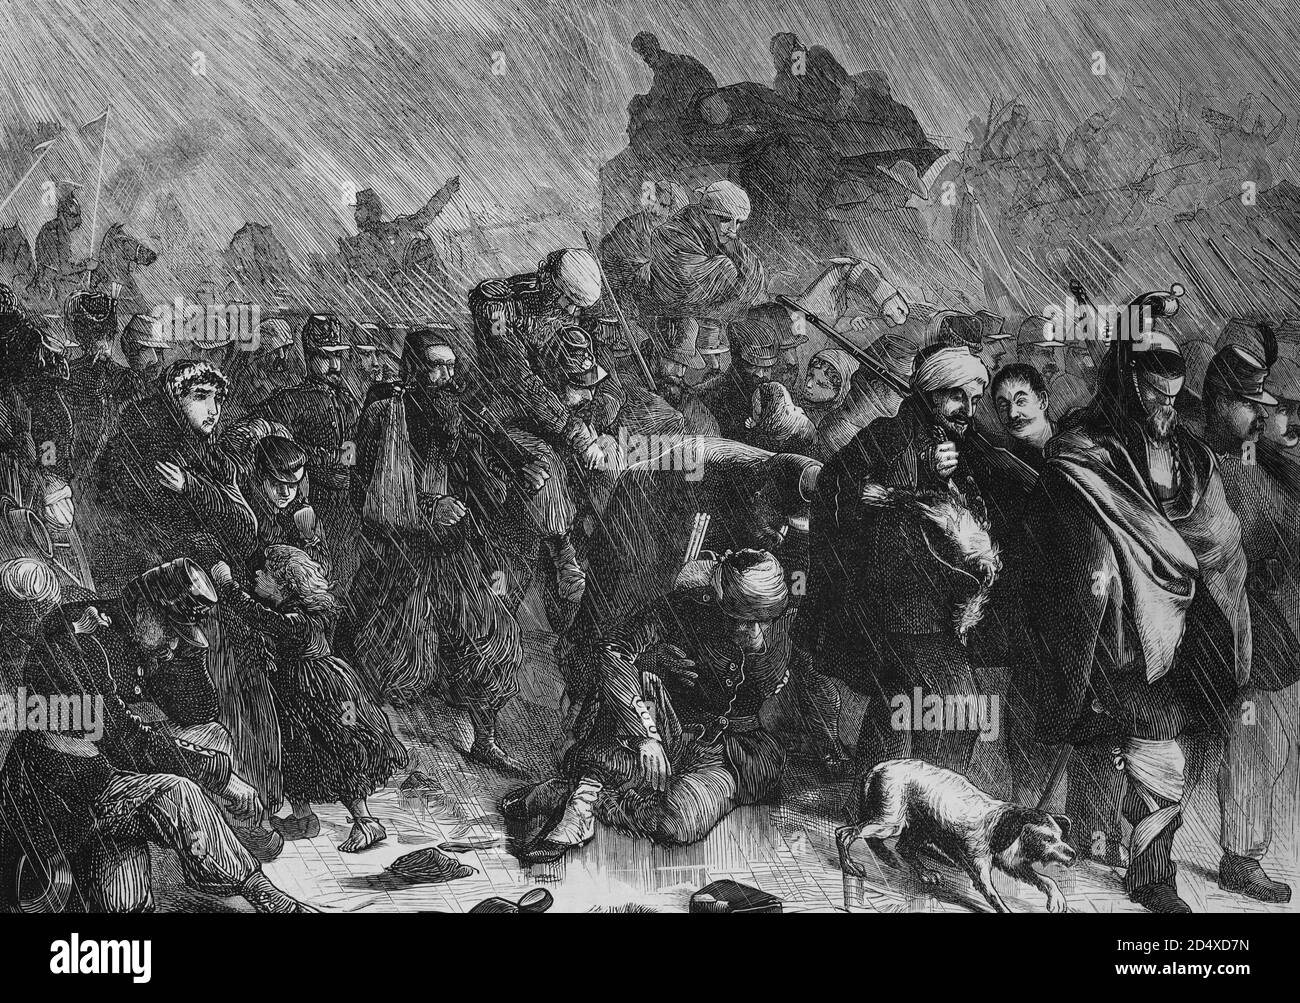 Rückzug der Truppenteile der französischen Loire-Armee nach der Schlacht mit Orleans, illustrierte Kriegsgeschichte, Deutsch - Französischer Krieg 1870-1871 Stockfoto